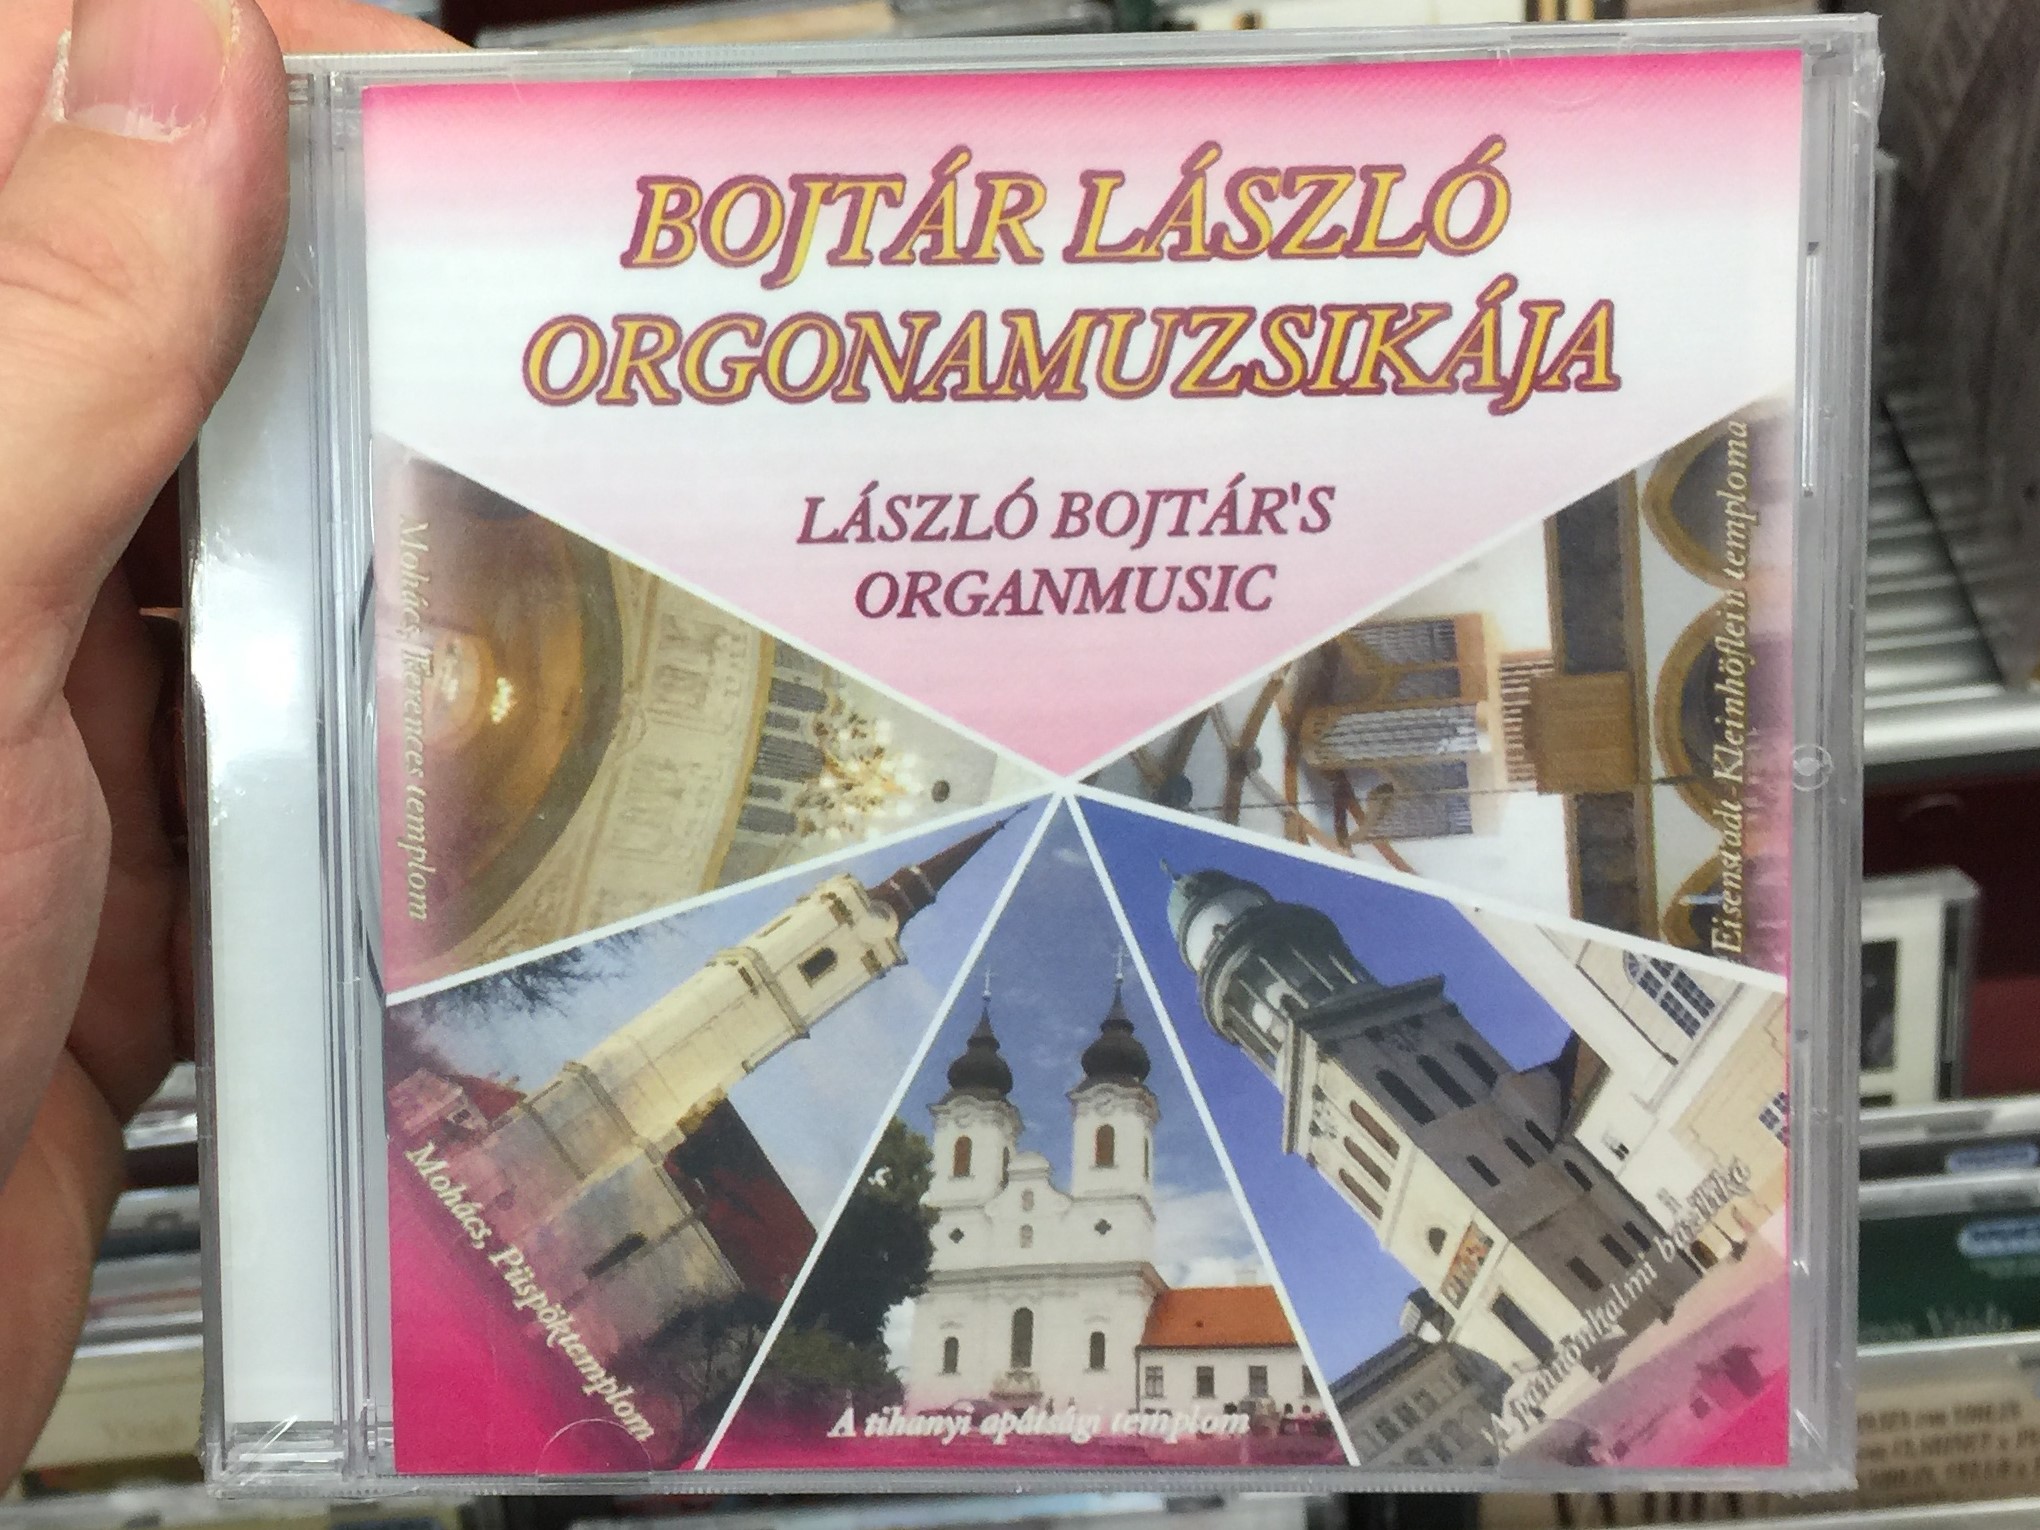 bojt-r-l-szl-orgonamuzsikaja-laszlo-bojtar-s-organmusic-audio-cd-4680188104552-1-.jpg